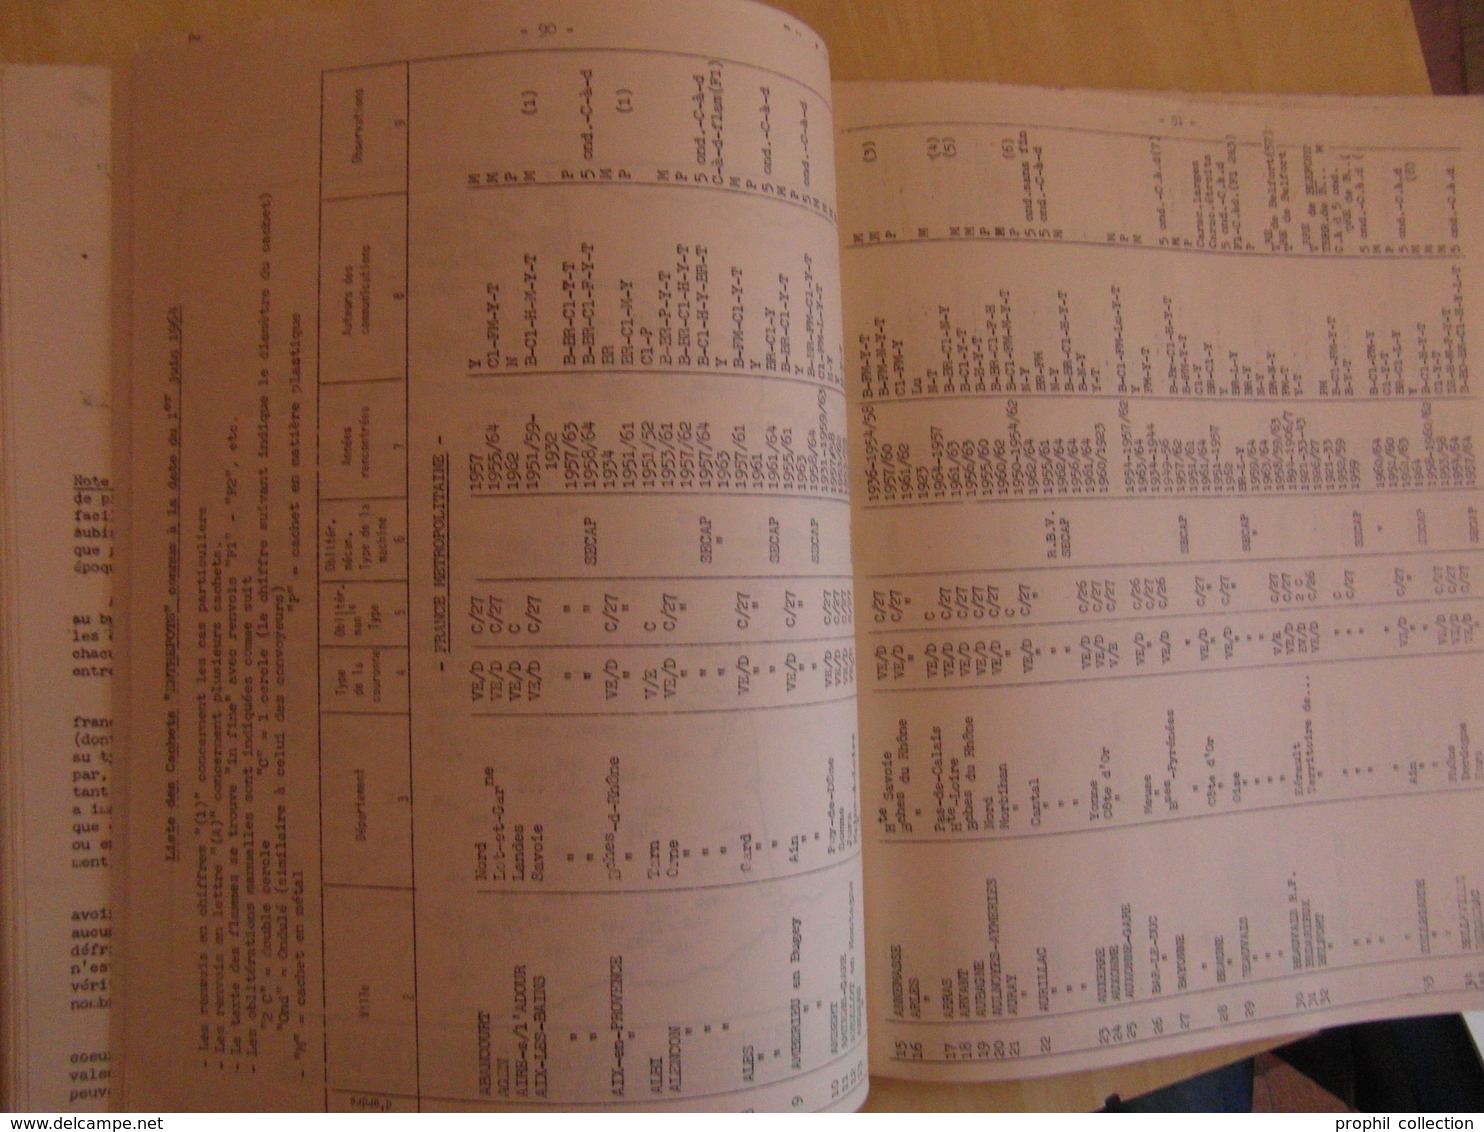 LES FEUILLES MARCOPHILES N° 164 (MARS 1965 / 132 PAGES / PLUSIEURS PHOTOS) - BULLETIN DE L'UNION MARCOPHILE